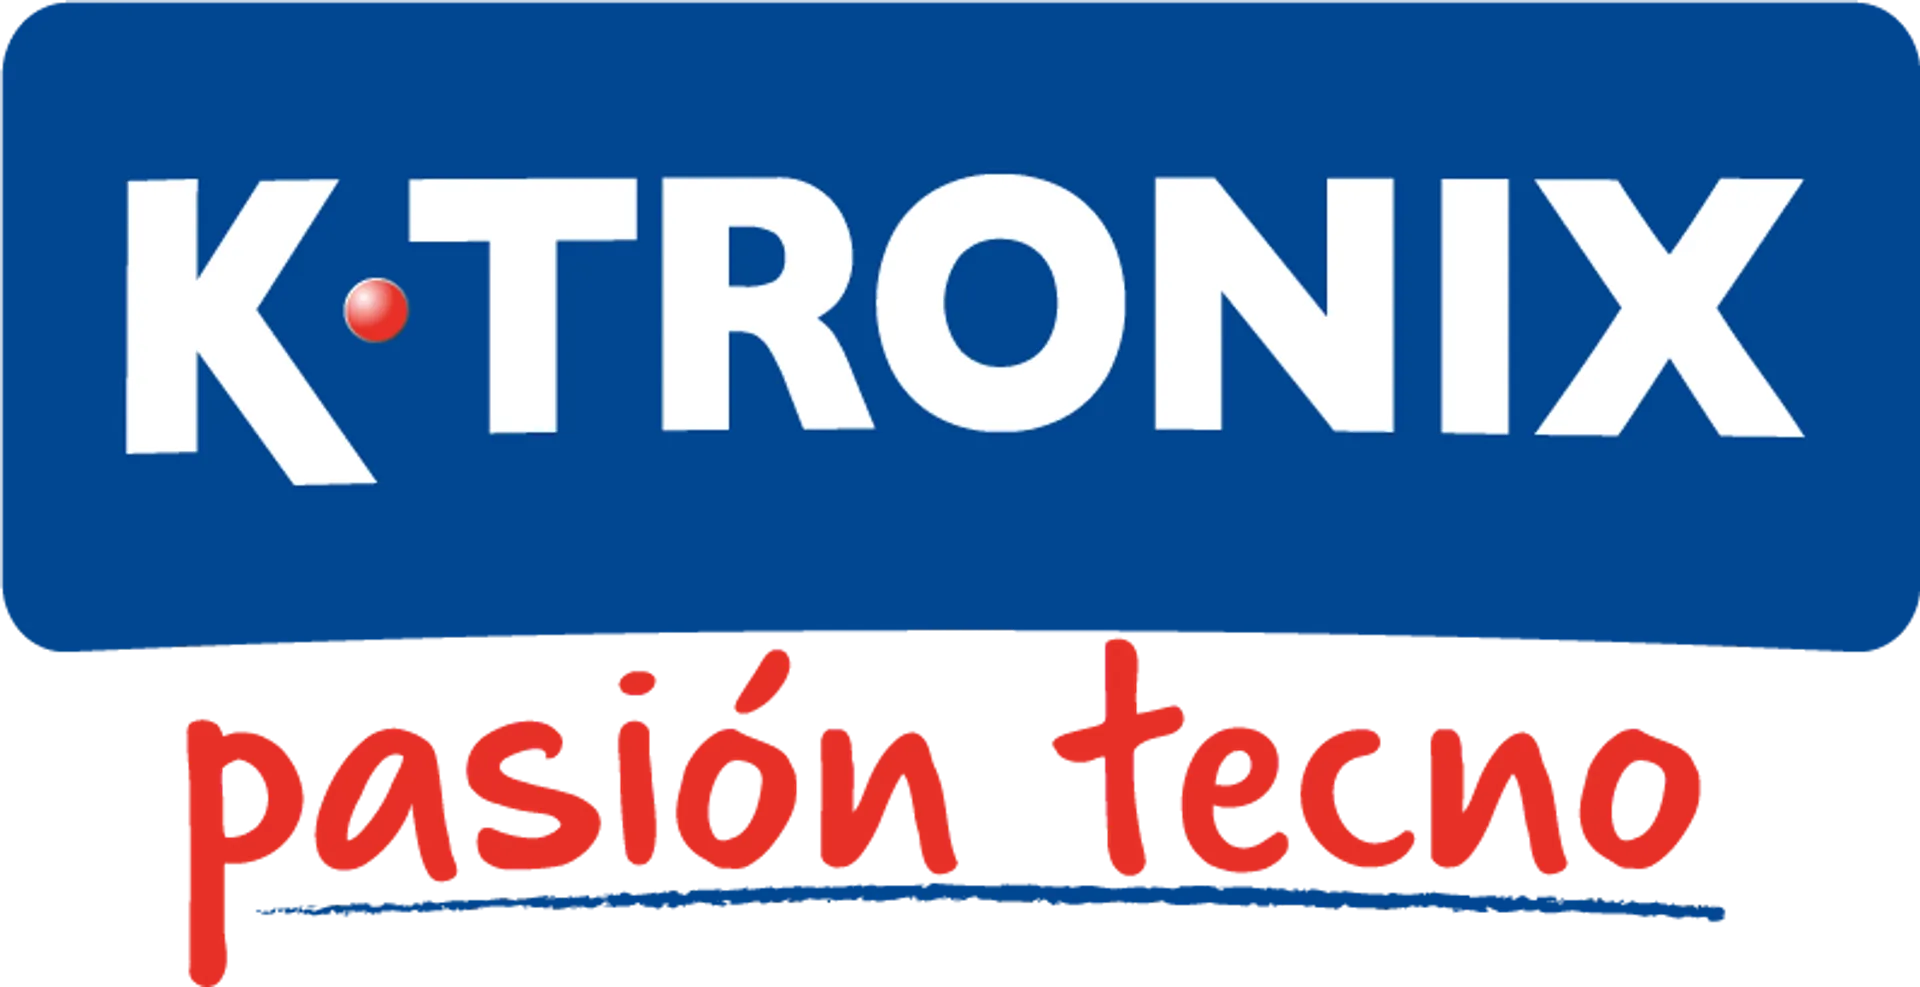 KTRONIX logo